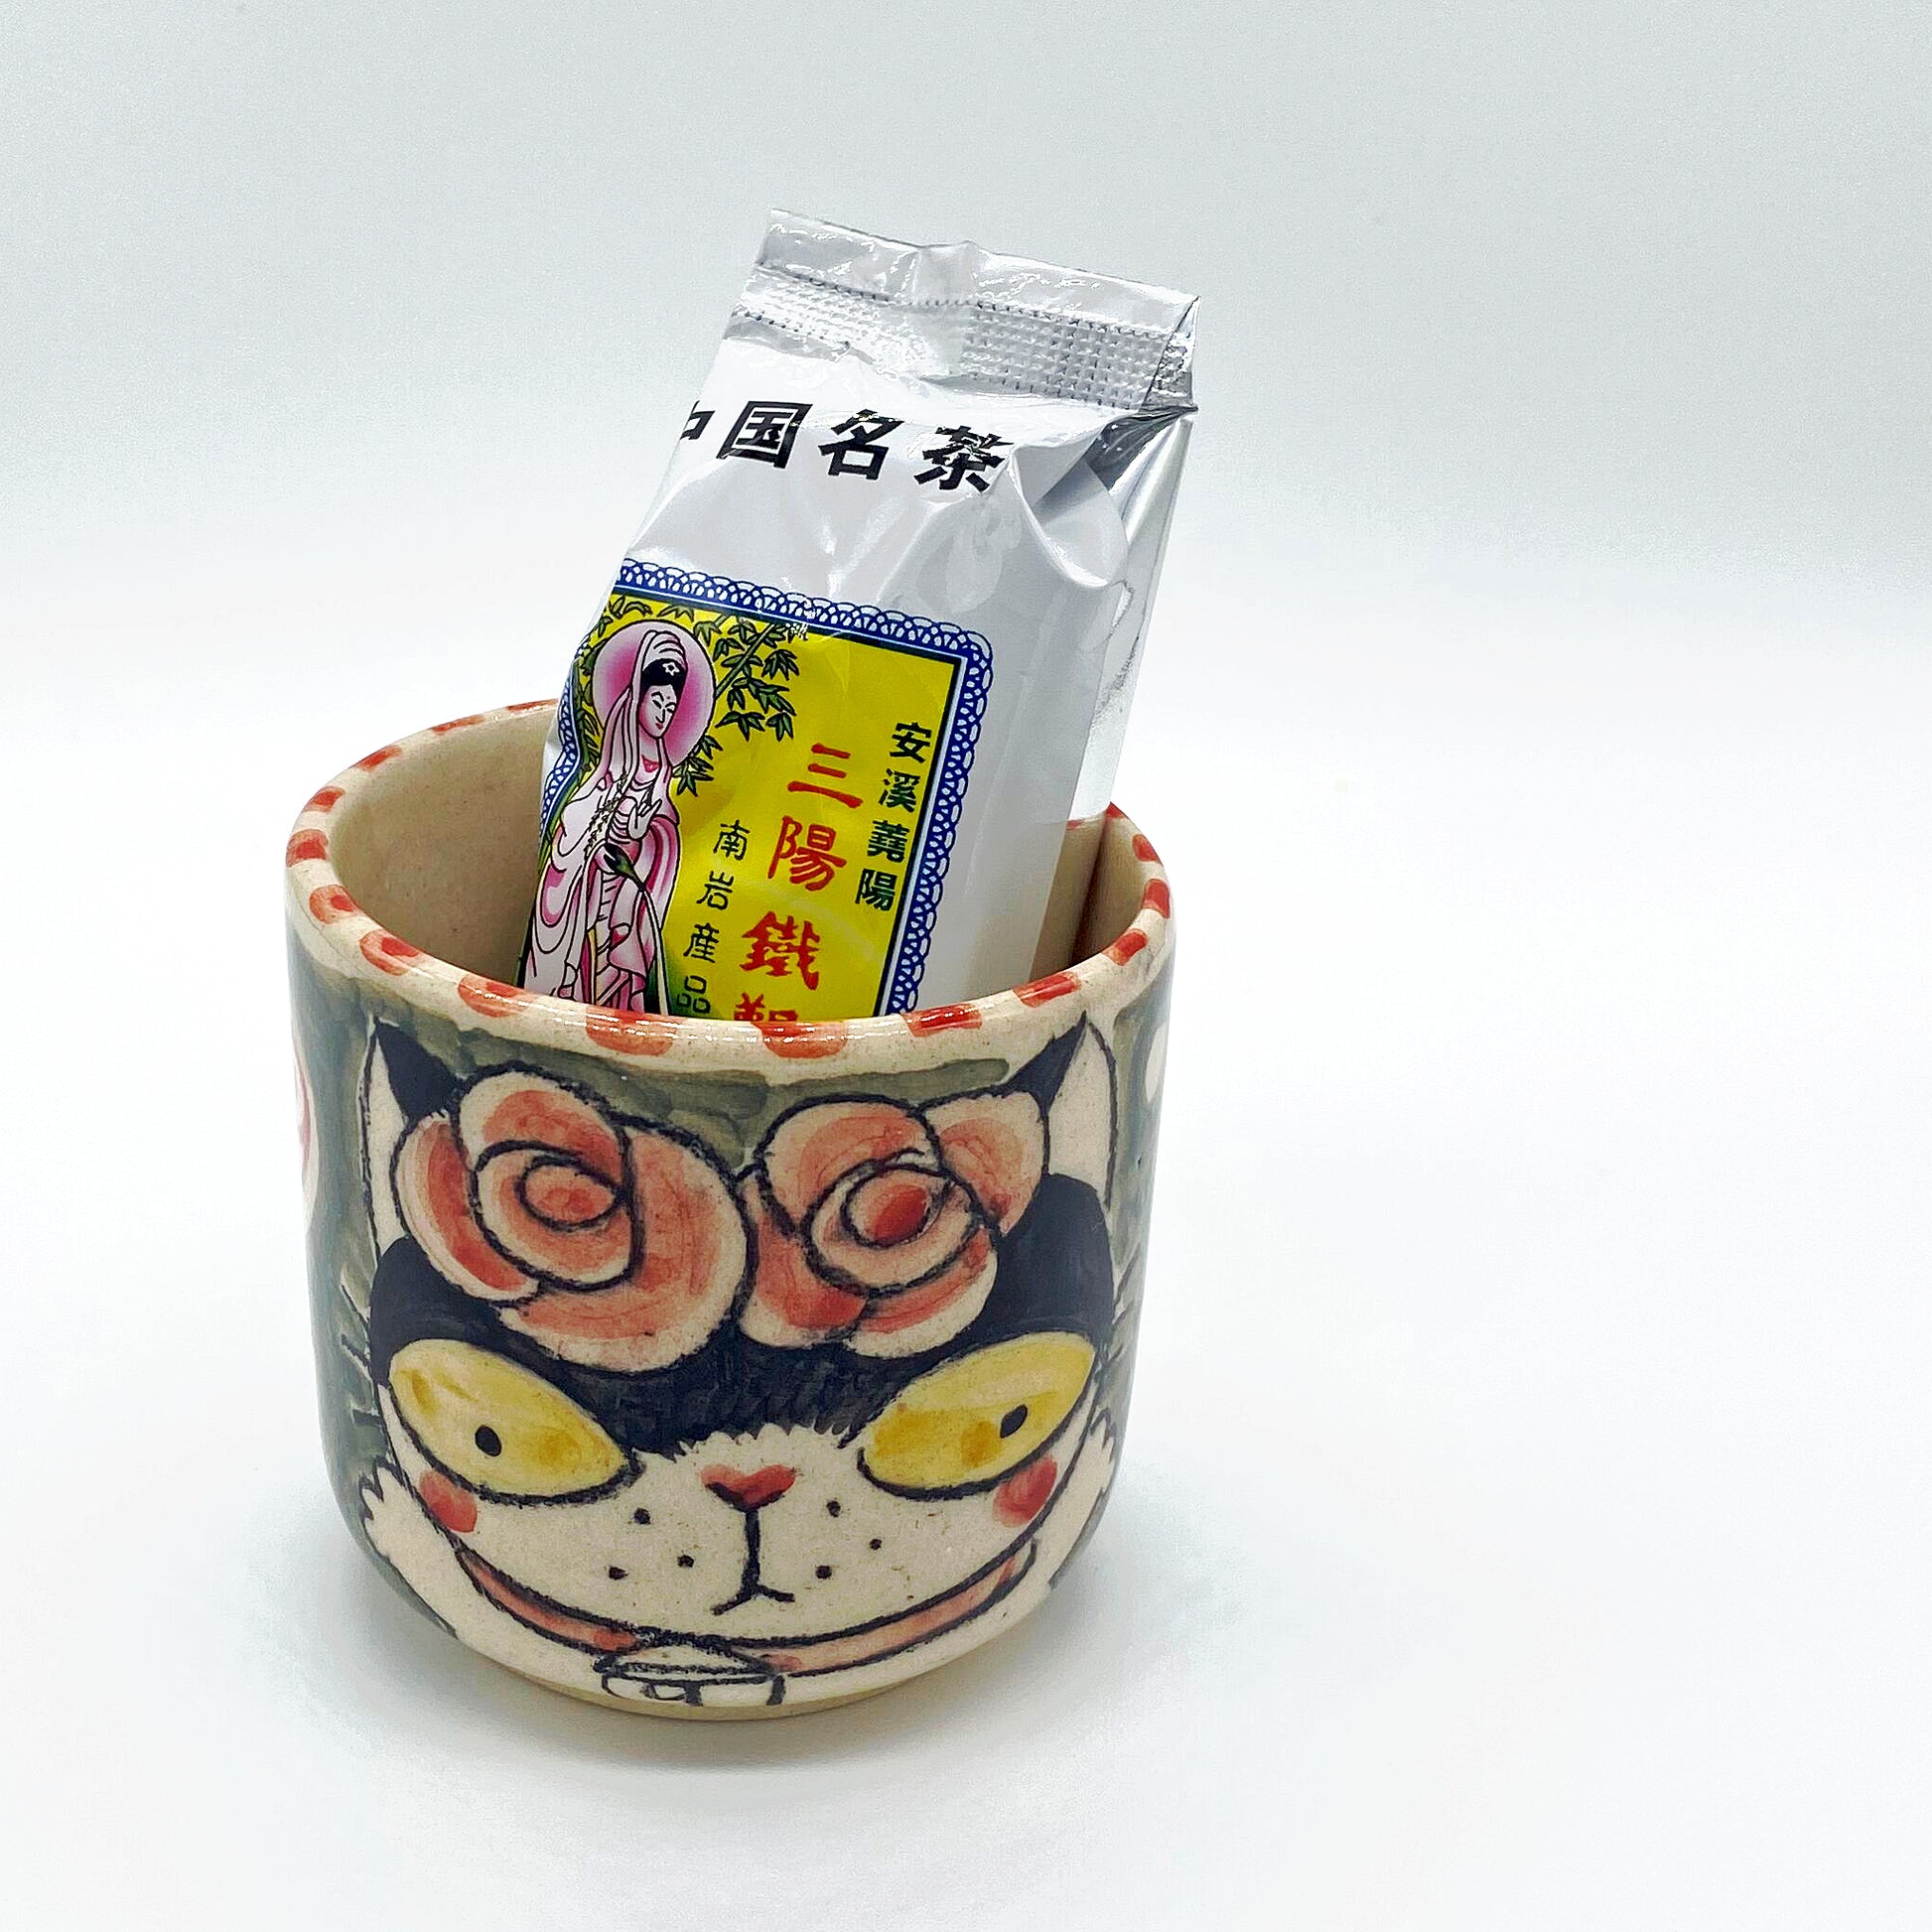 Ceramic tea cups with cat motif